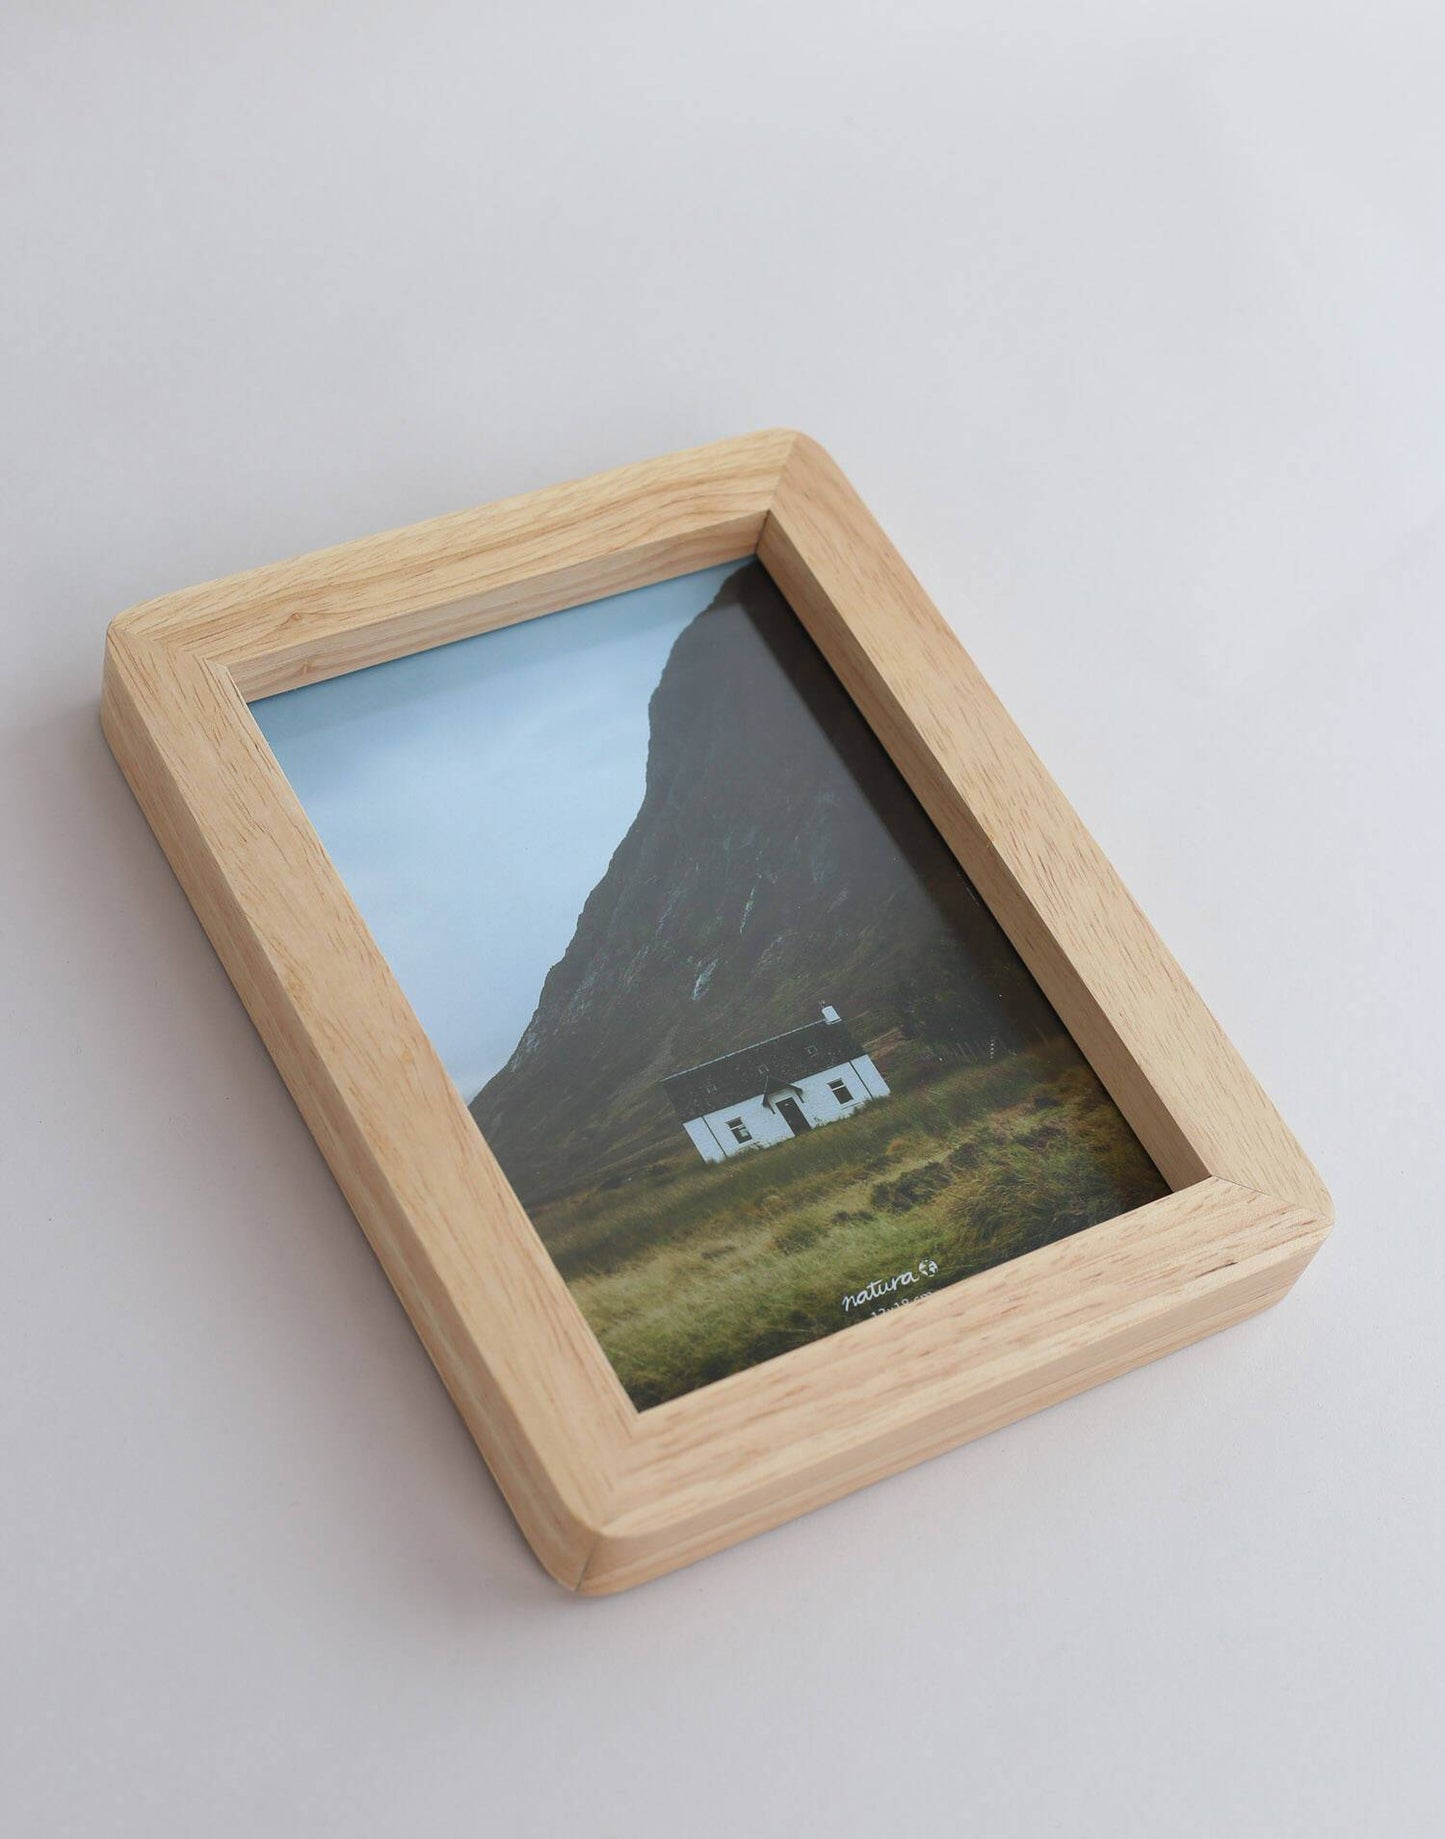 13 x 18 cm oak photo frame